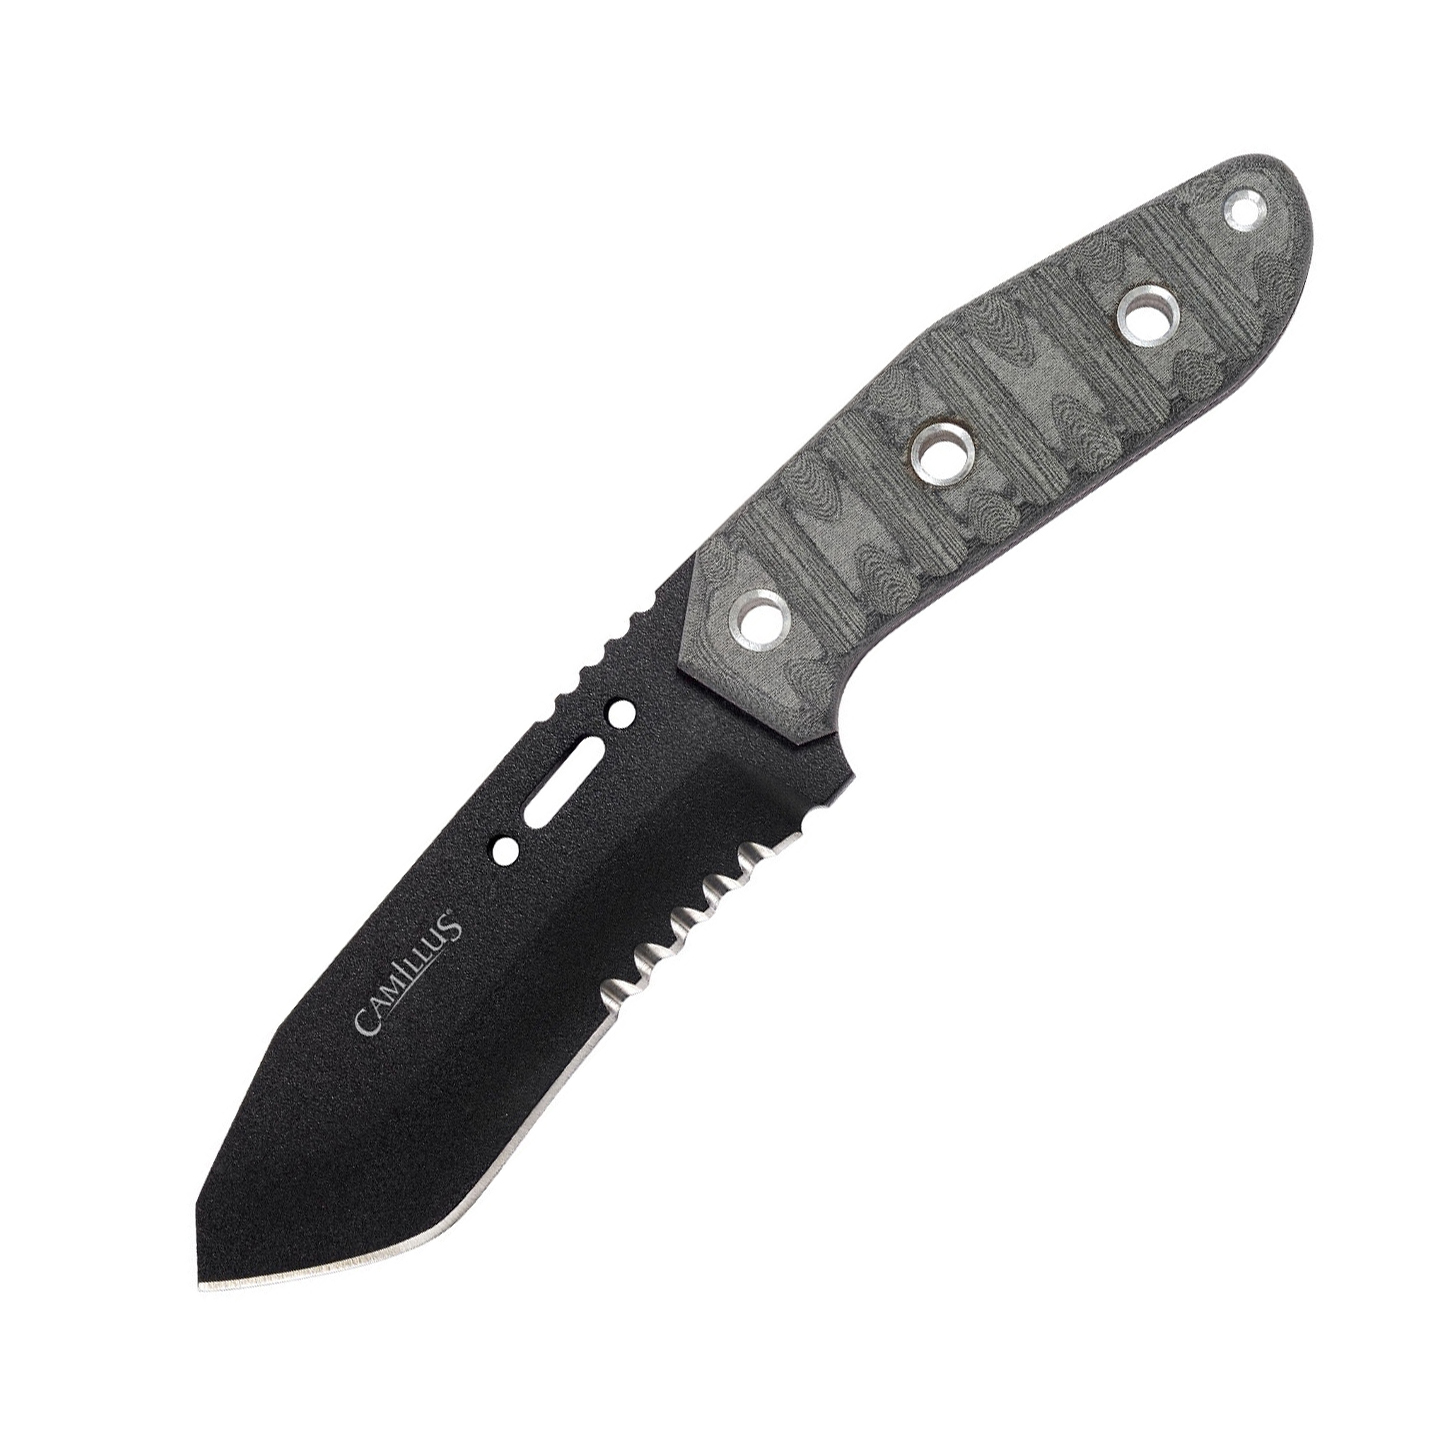 Нож с фиксированным клинком Camillus - TOPS Knives Collaborating Survival, сталь 1095 Carbon Steel, рукоять Микарта